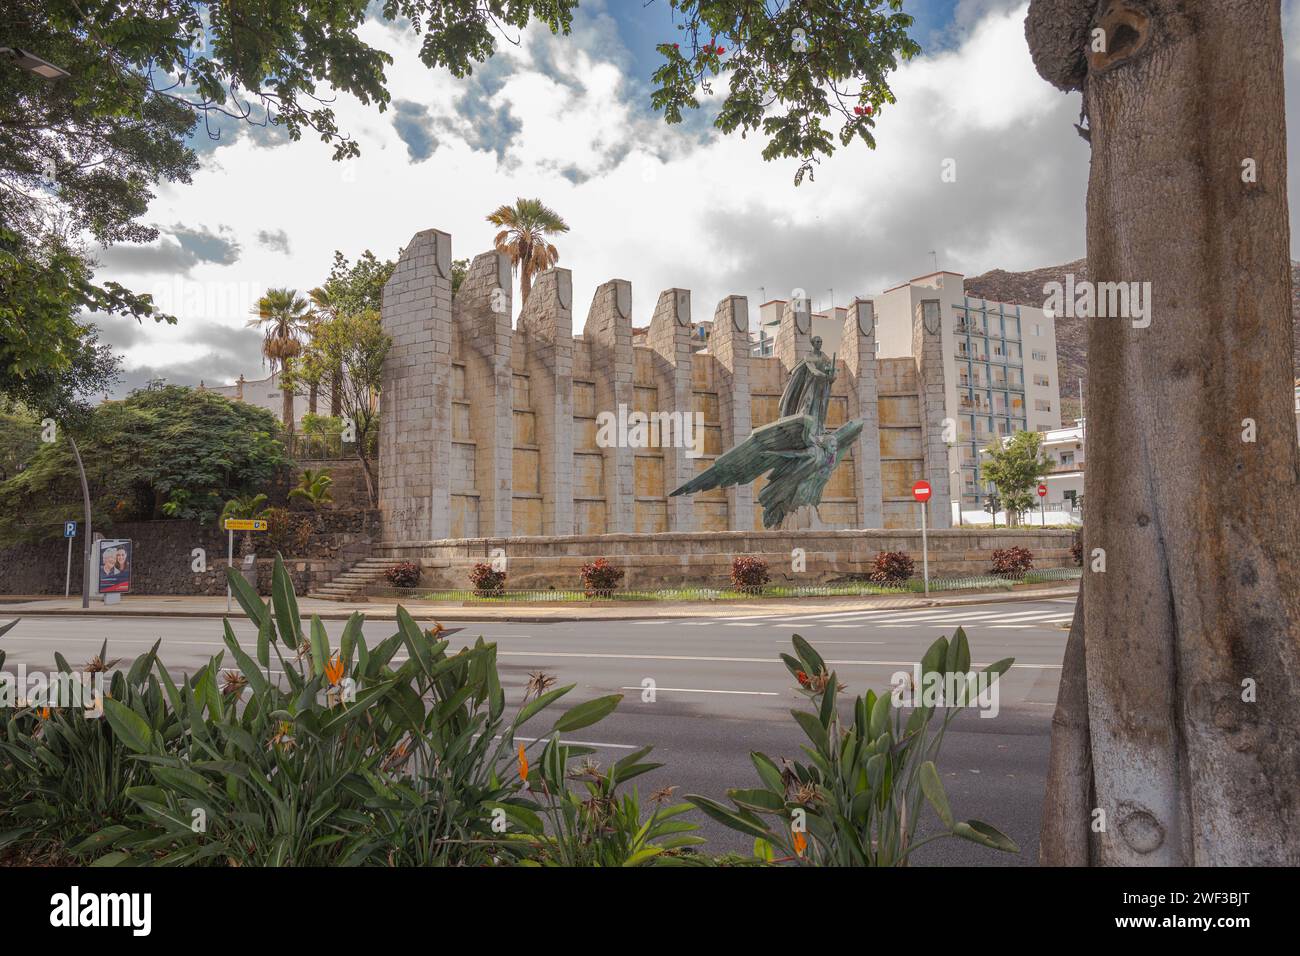 Denkmal des Sieges (oder Engel des Sieges), allgemein bekannt als Denkmal für Franco, Santa Cruz, Teneriffa, Kanarische Inseln, Spanien, Europa Stockfoto